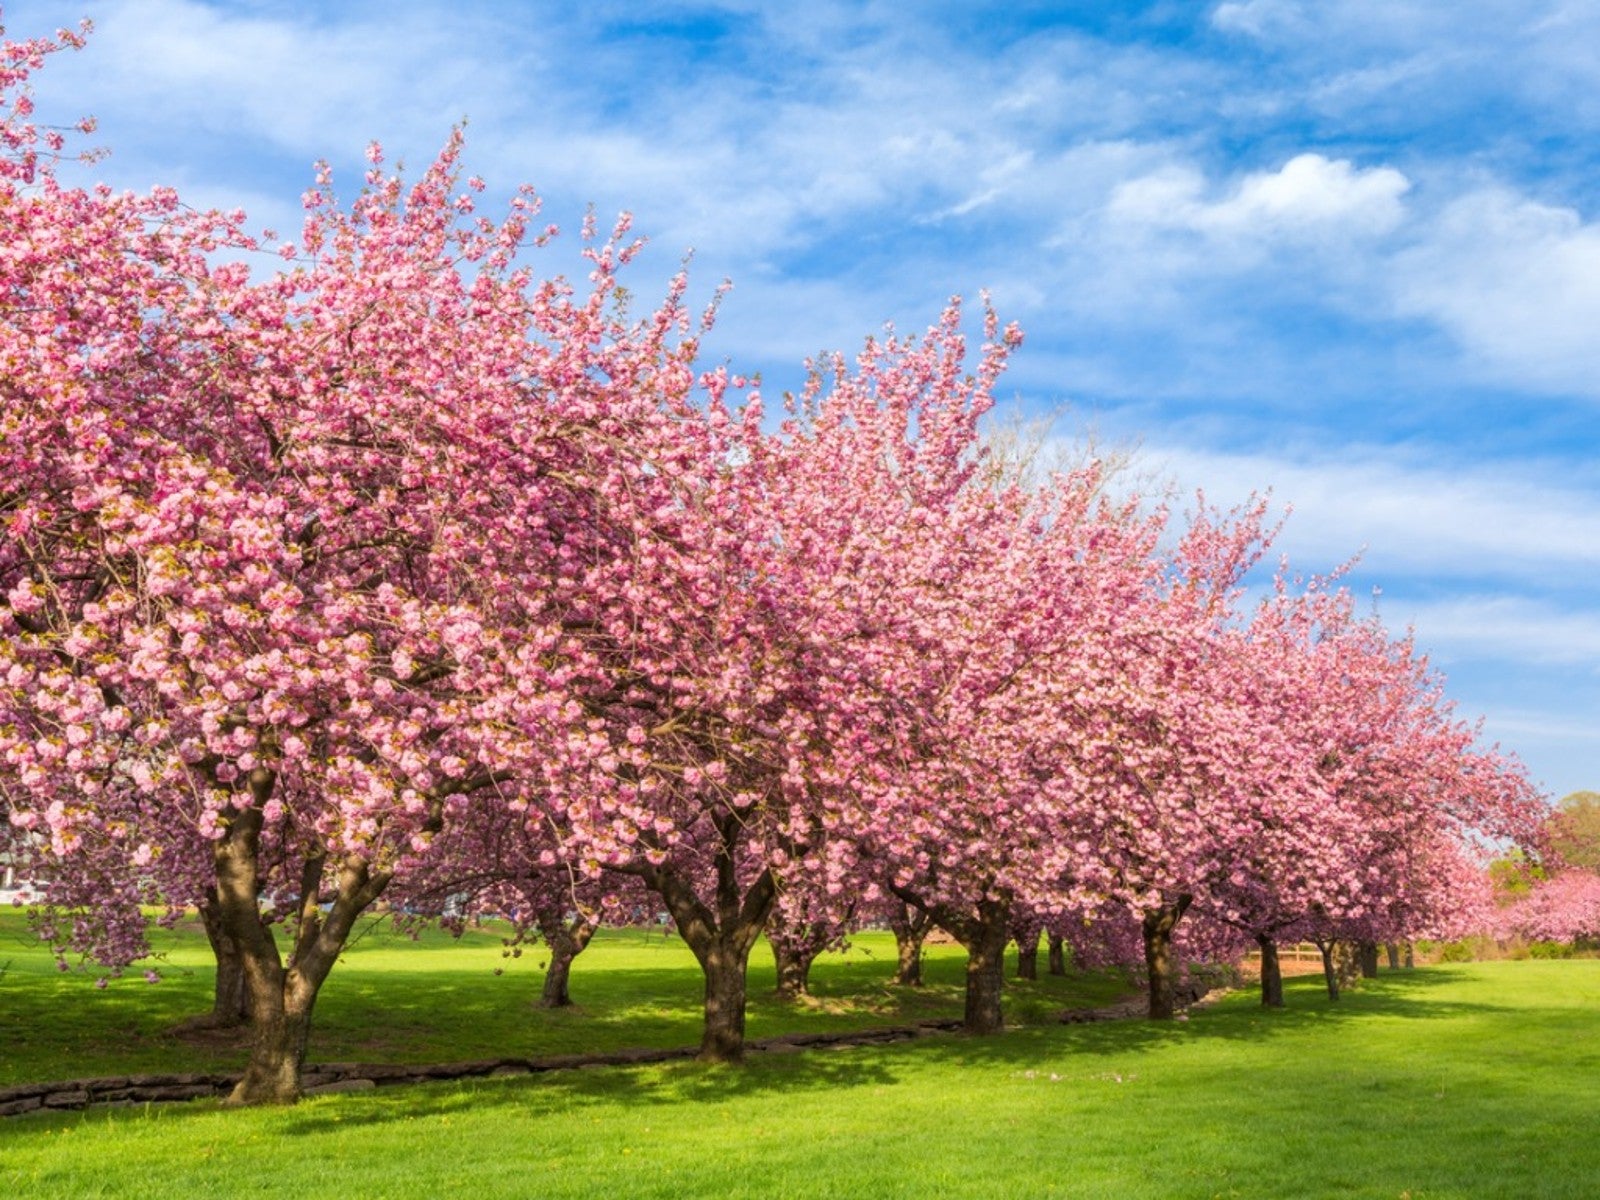 beautiful trees that bloom pink flowers - pink flowering trees